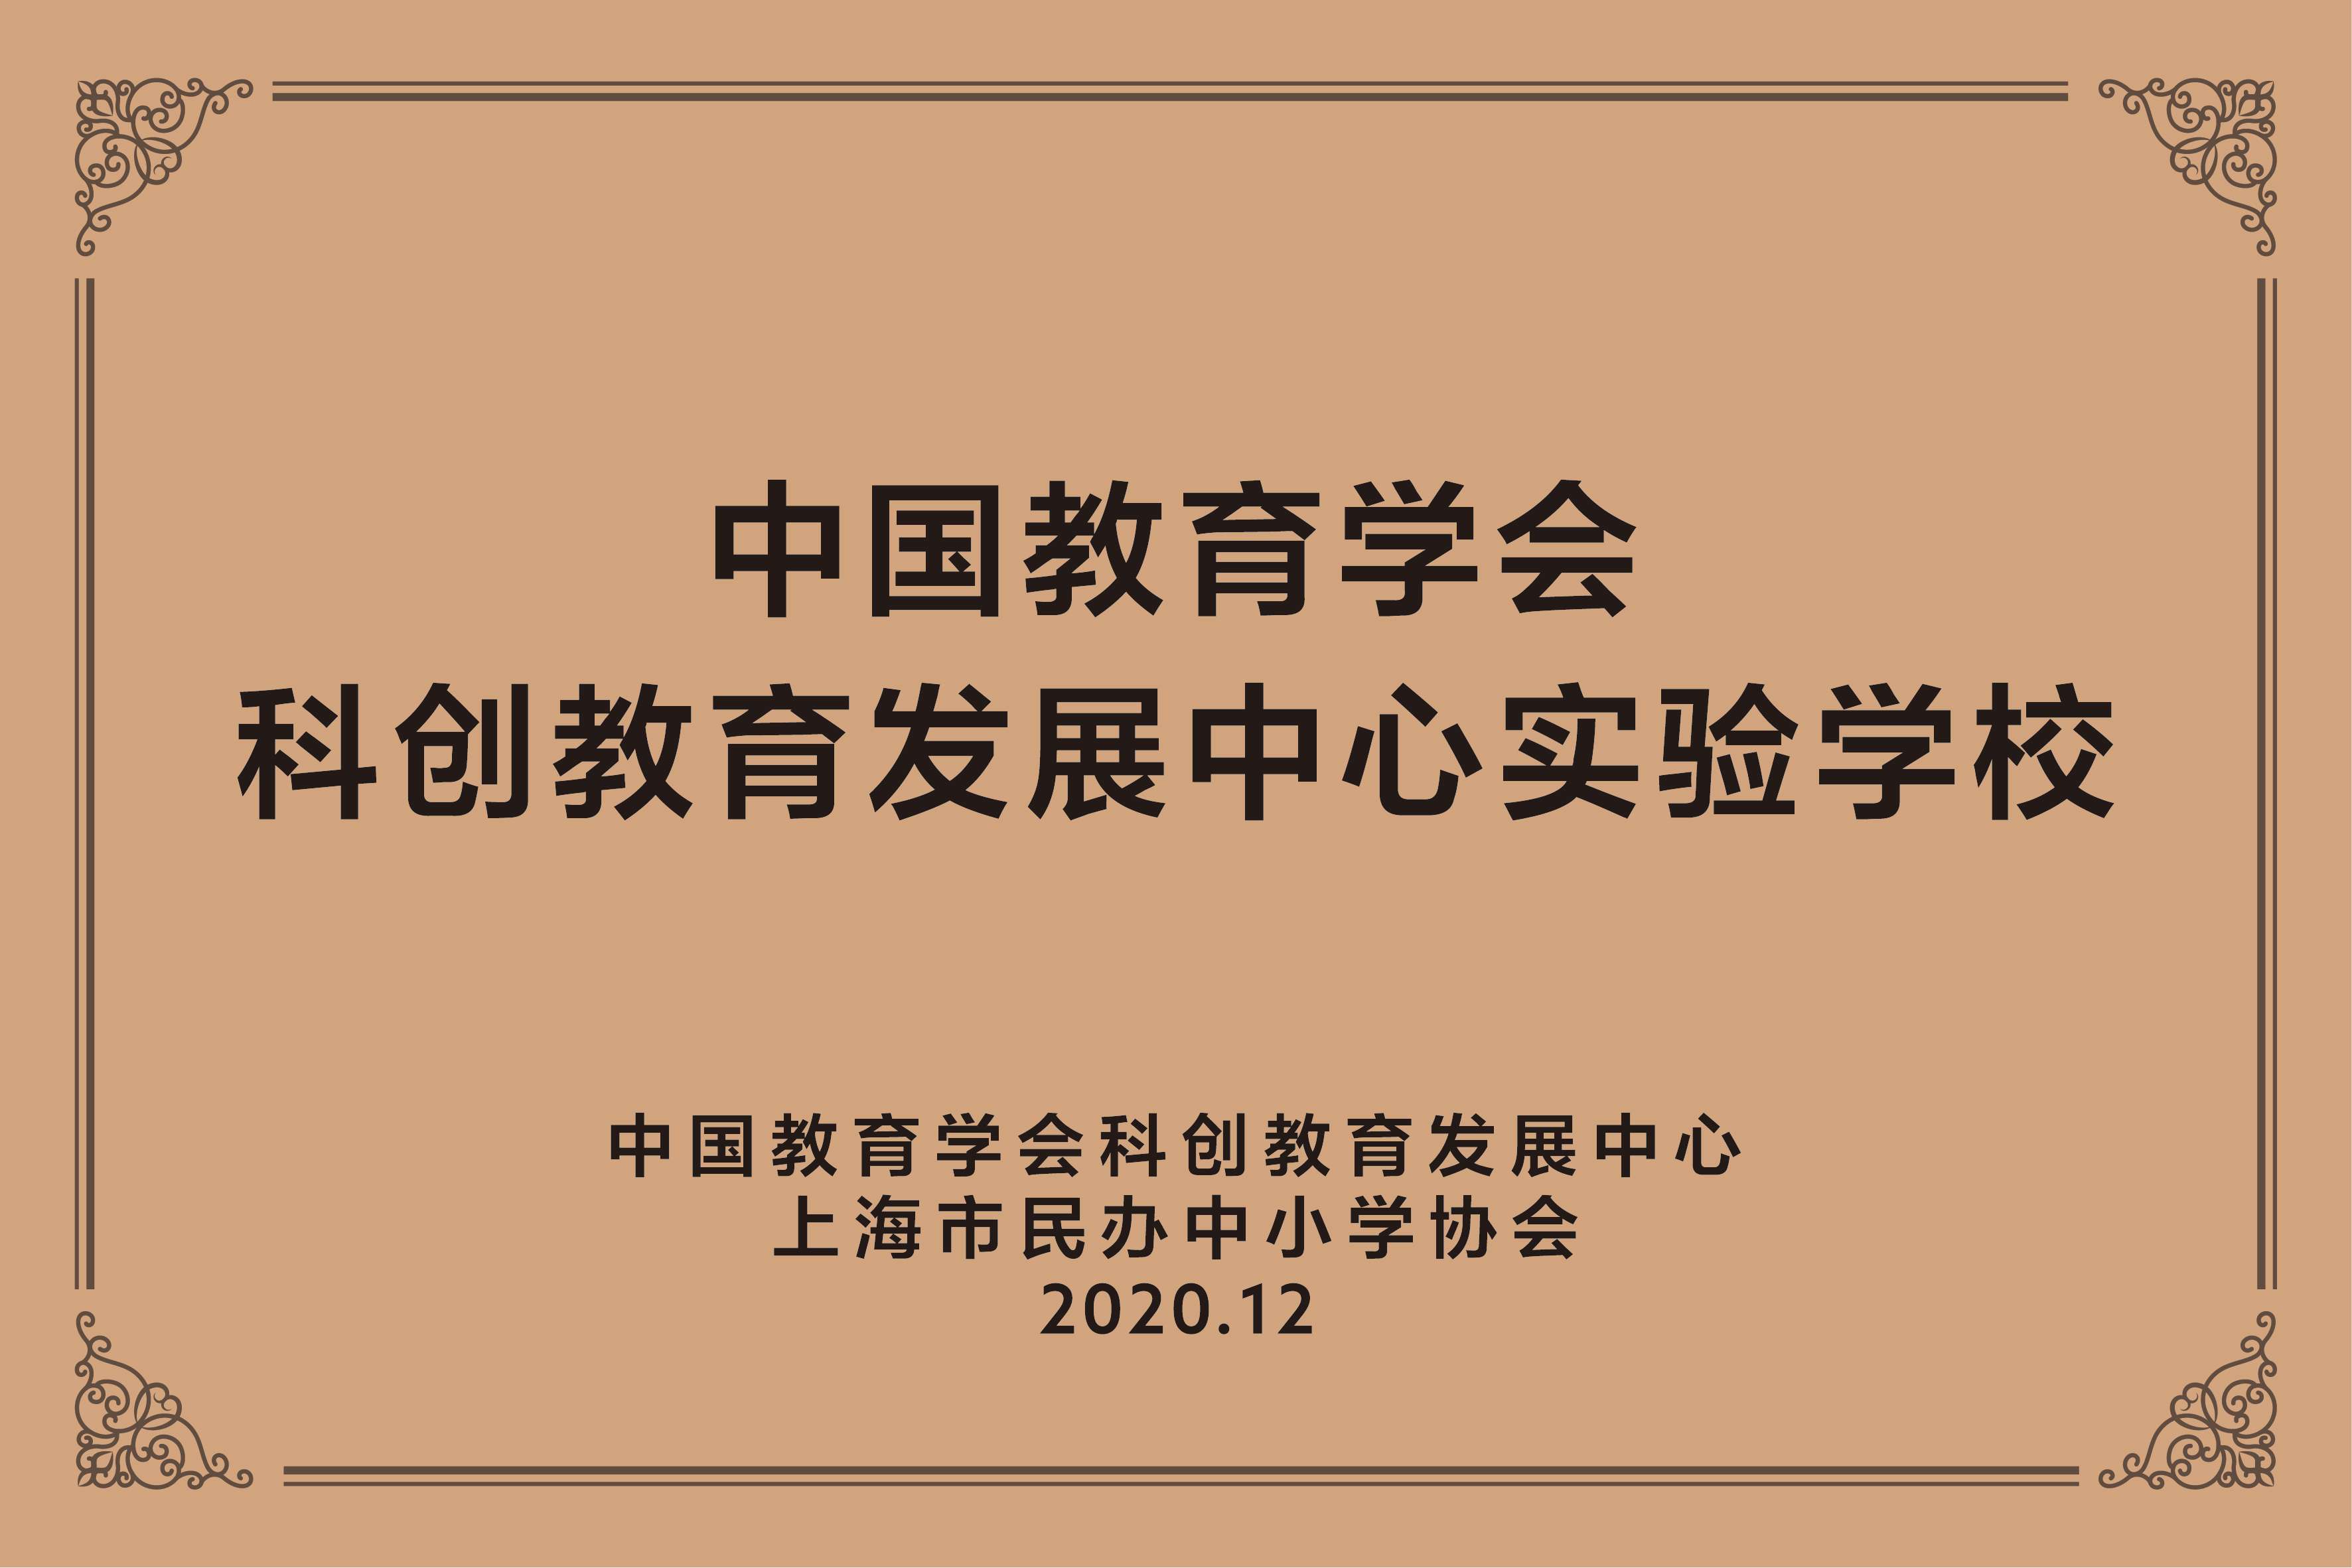 中国教育学会科创教育发展中心实验学校.jpg